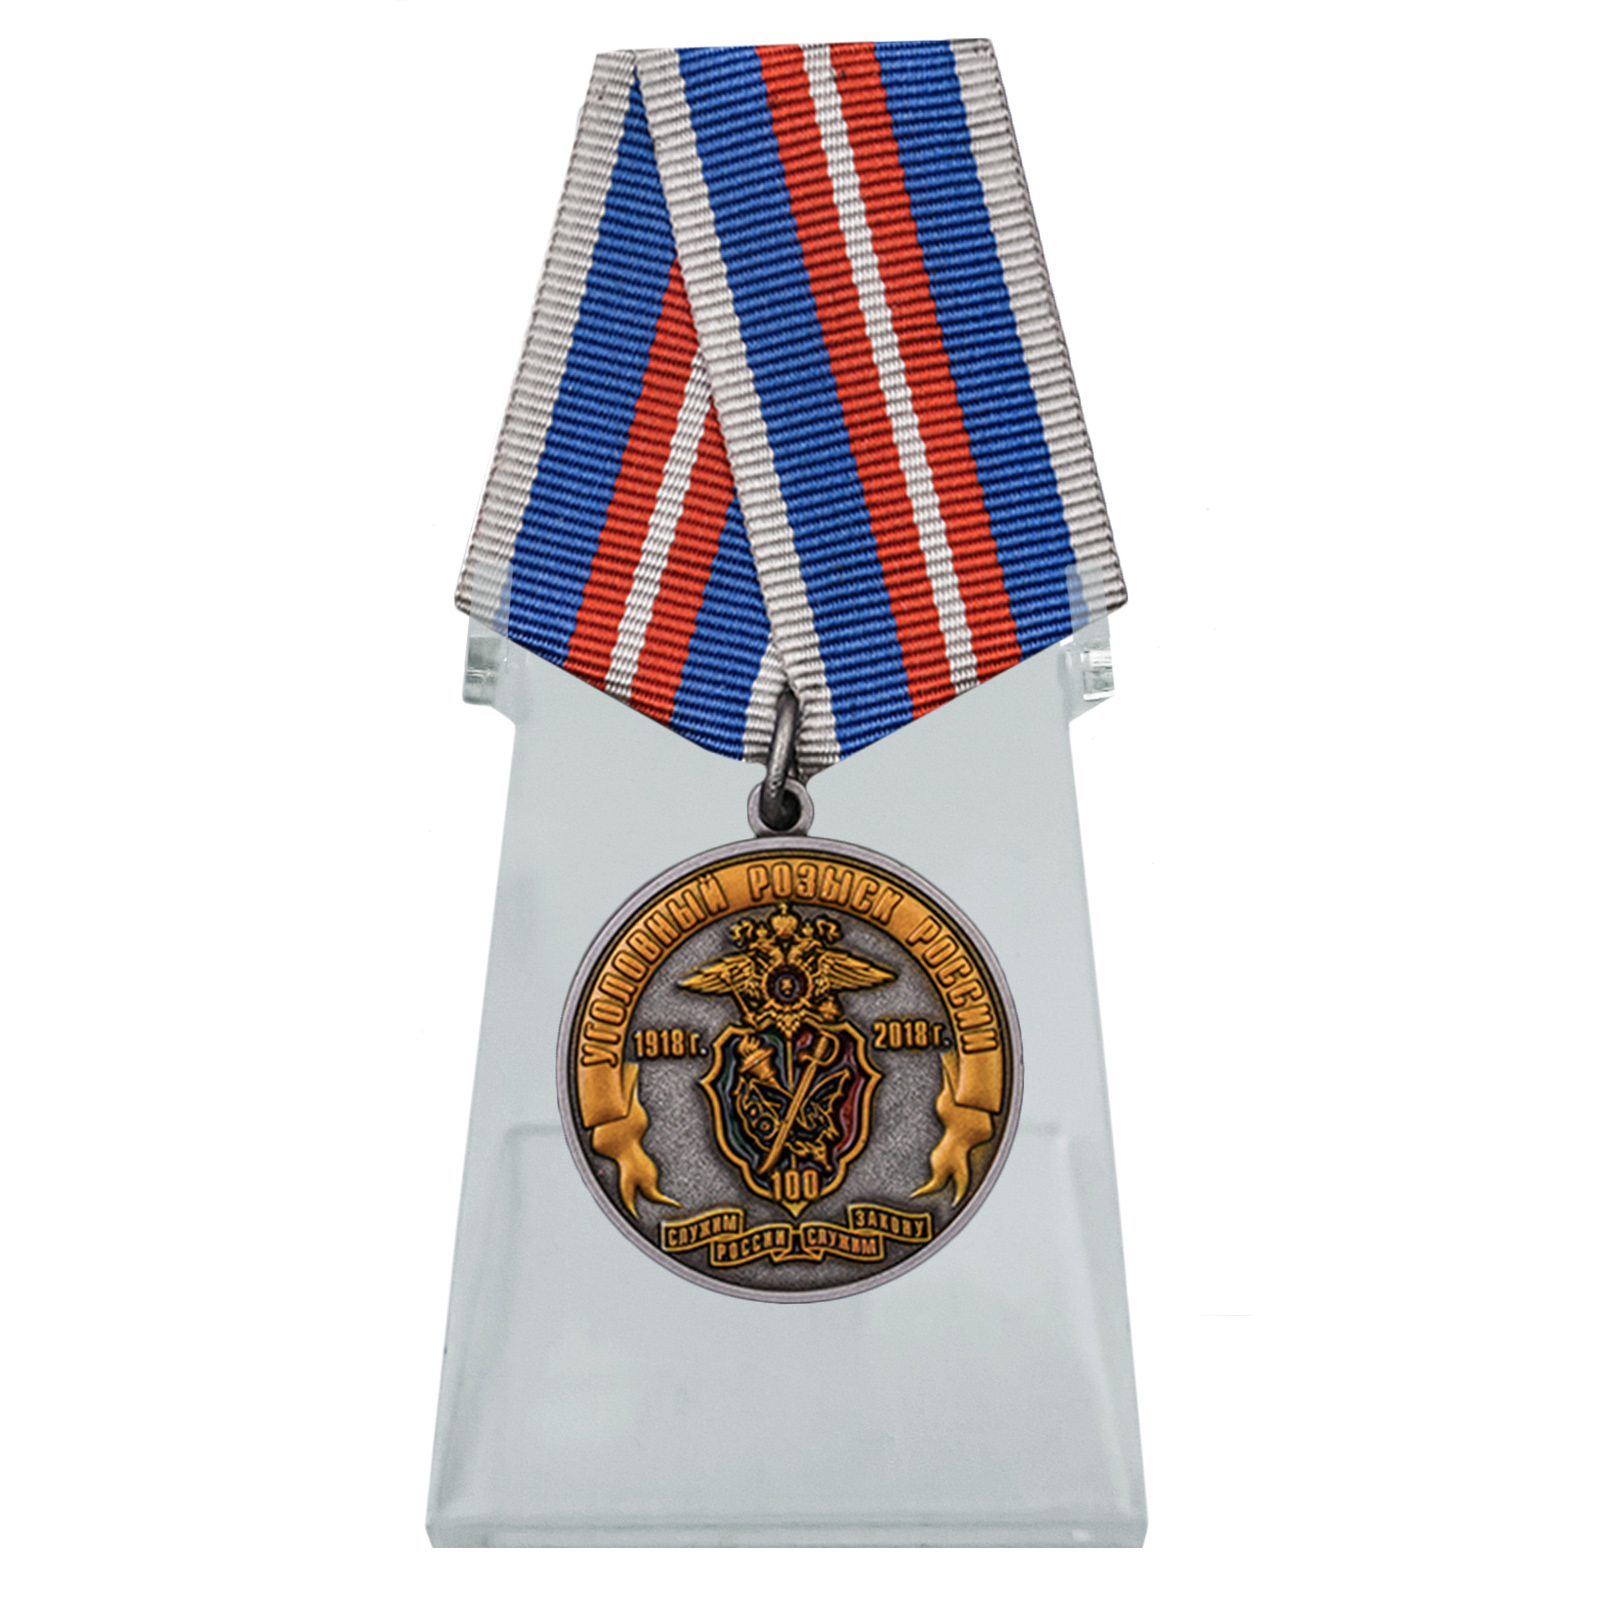 Медаль "100 лет Уголовному розыску России 1918-2018" на подставке